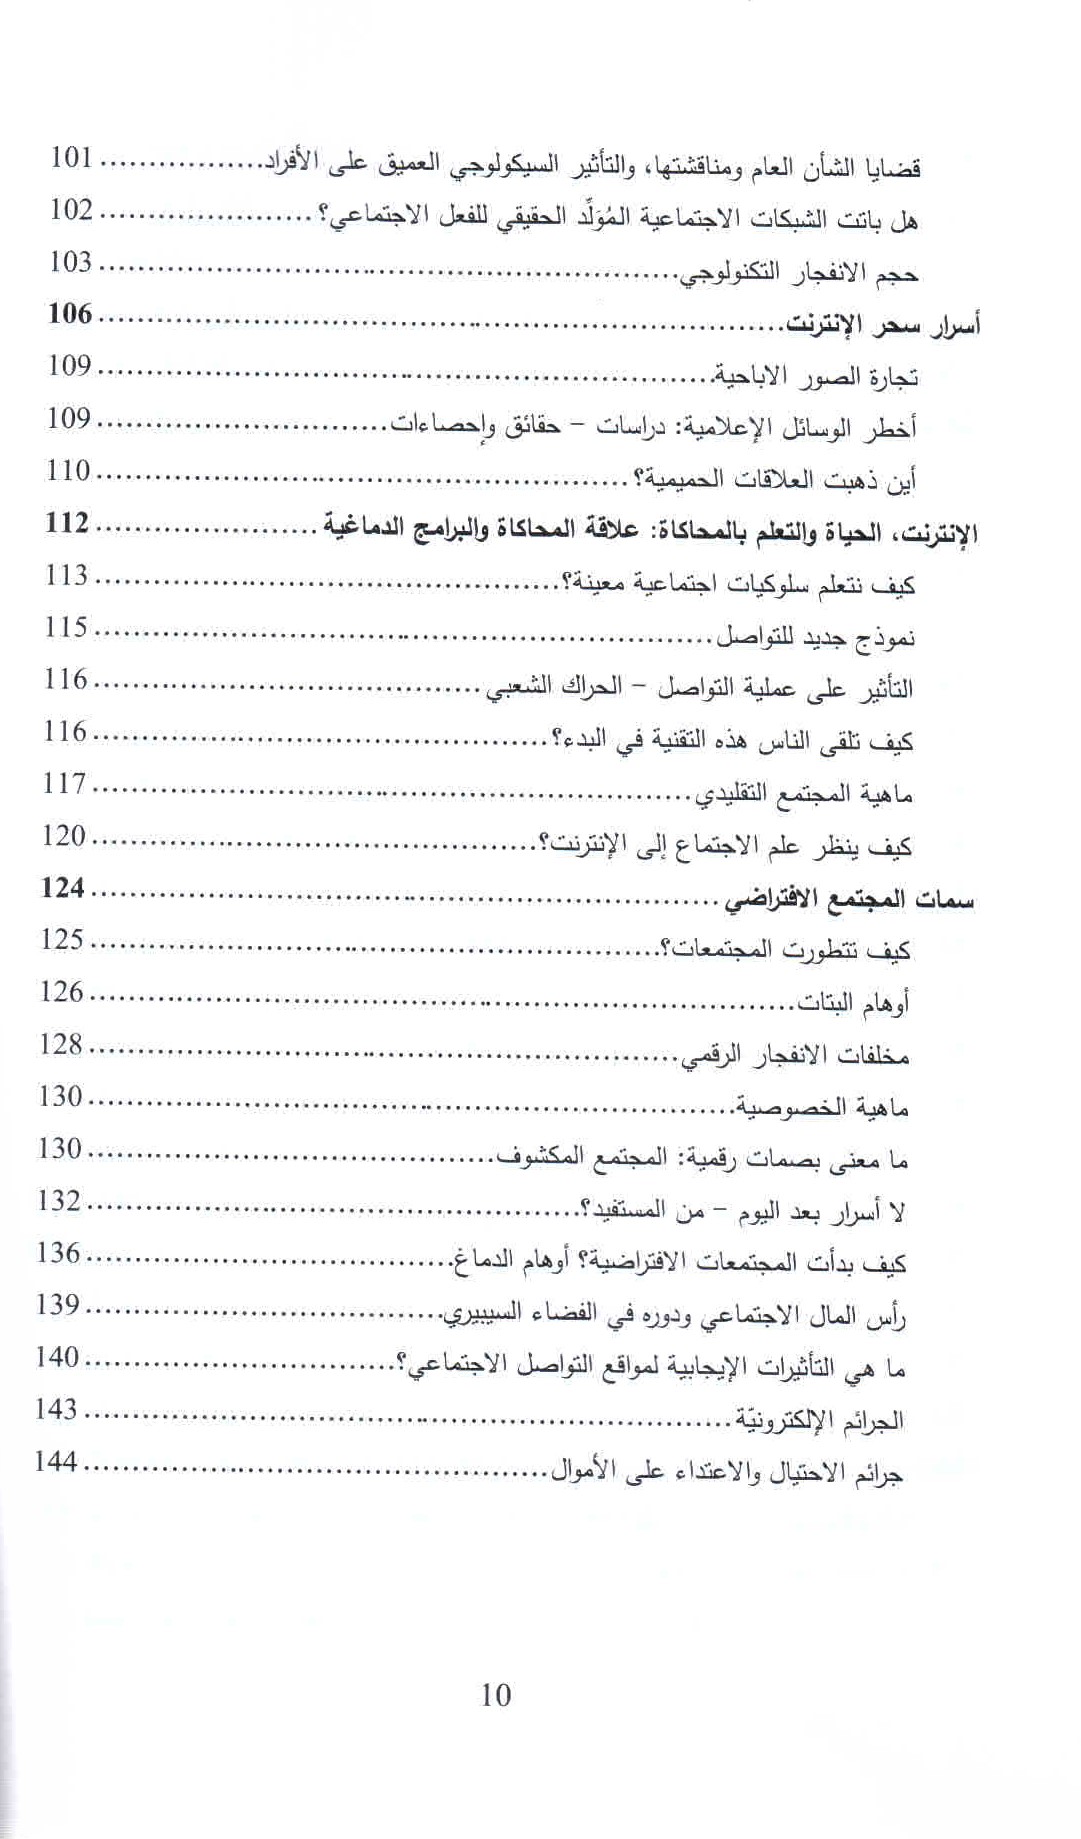 قائمة محتويات كتاب الإدمان الرقمي ص. 10